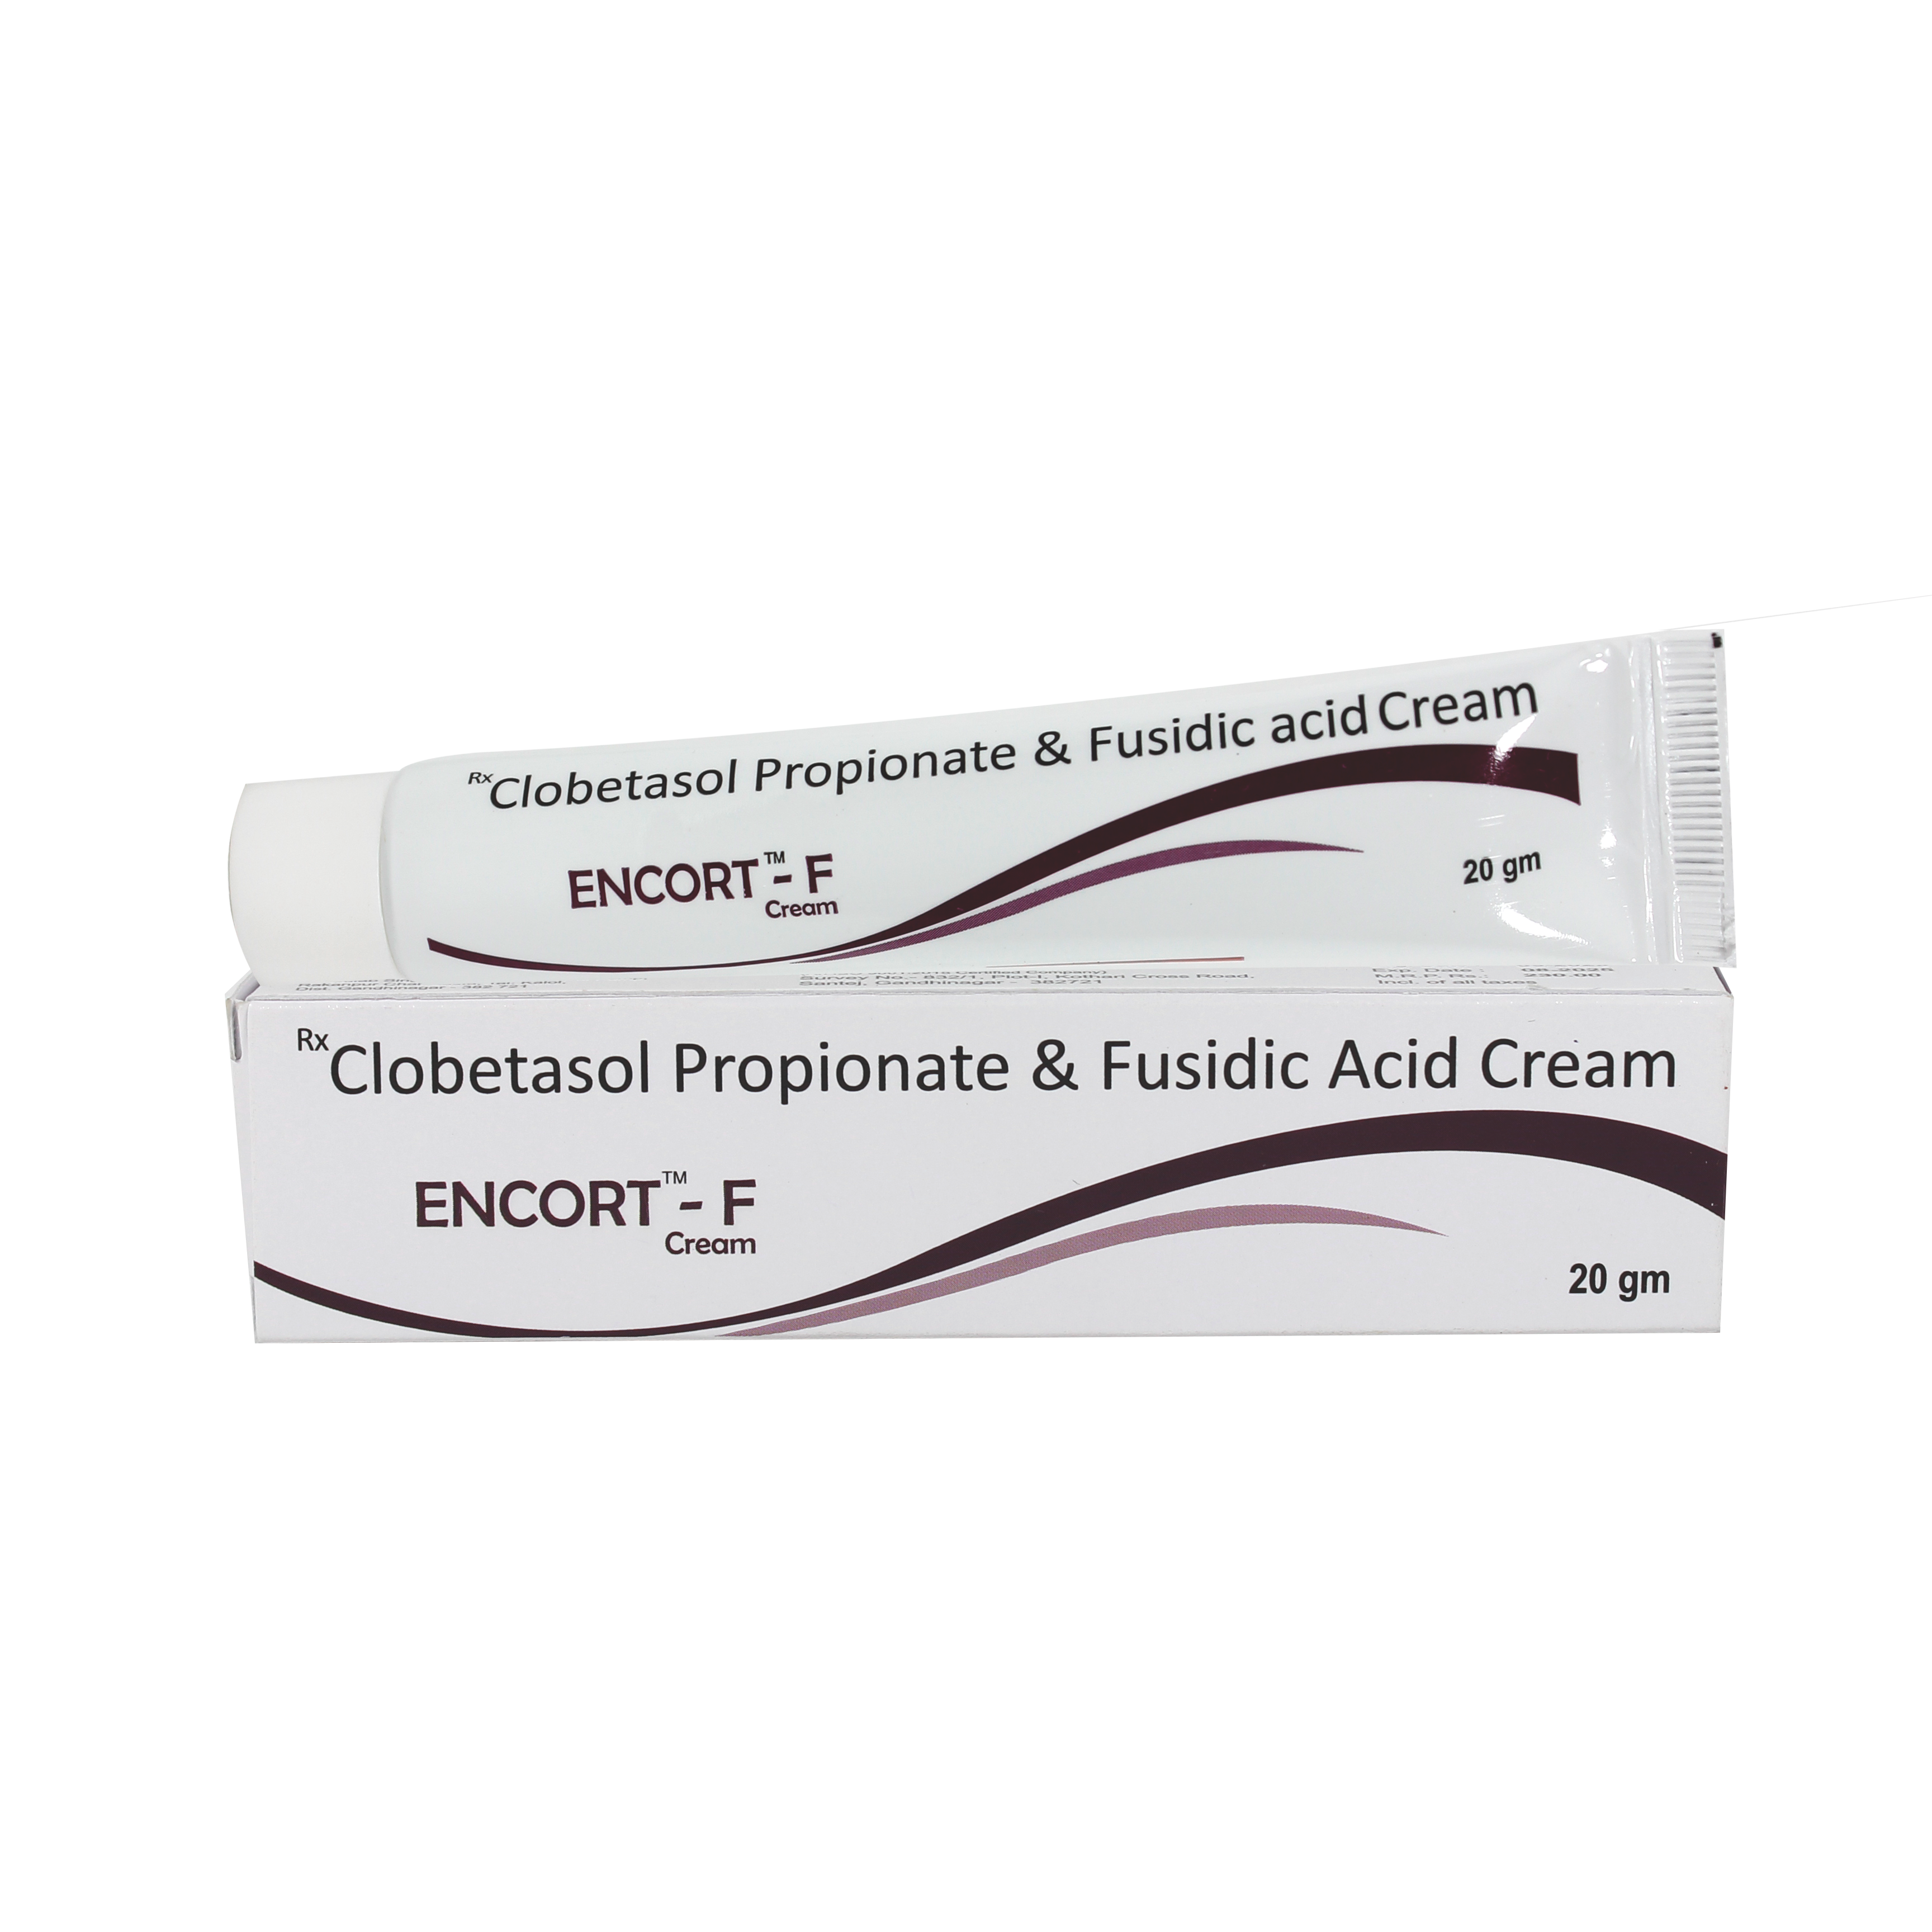 Clobetasol Propionate & Fusidic Acid Cream Manufacturer & Wholesaler Supplier